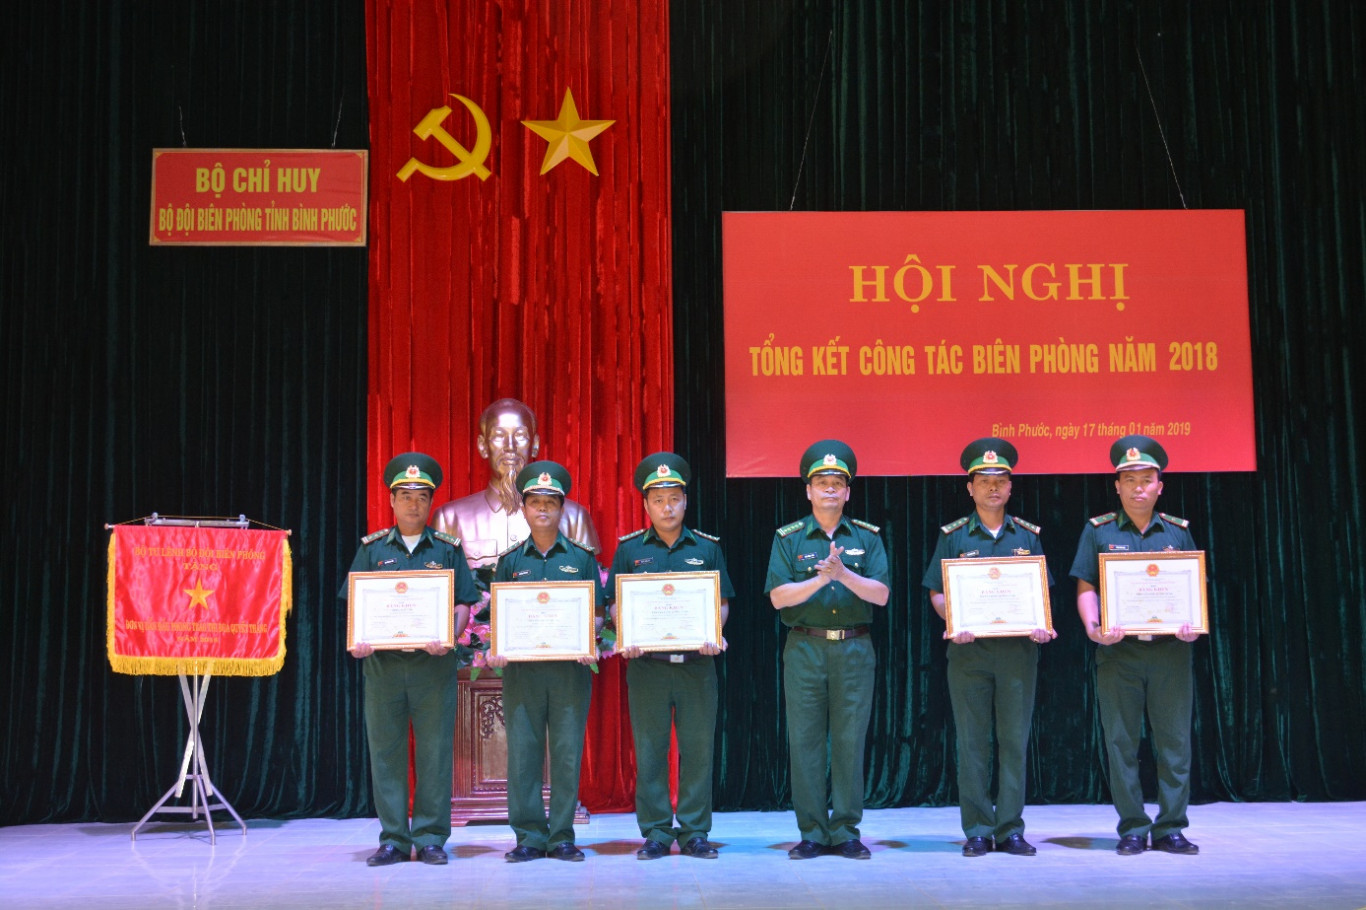 Đại tá Bùi Minh Soái, Chỉ huy trưởng BĐBP tỉnh trao bằng khen của Ủy ban nhân dân tỉnh cho các tập thể, cá nhân tại Hội nghị.